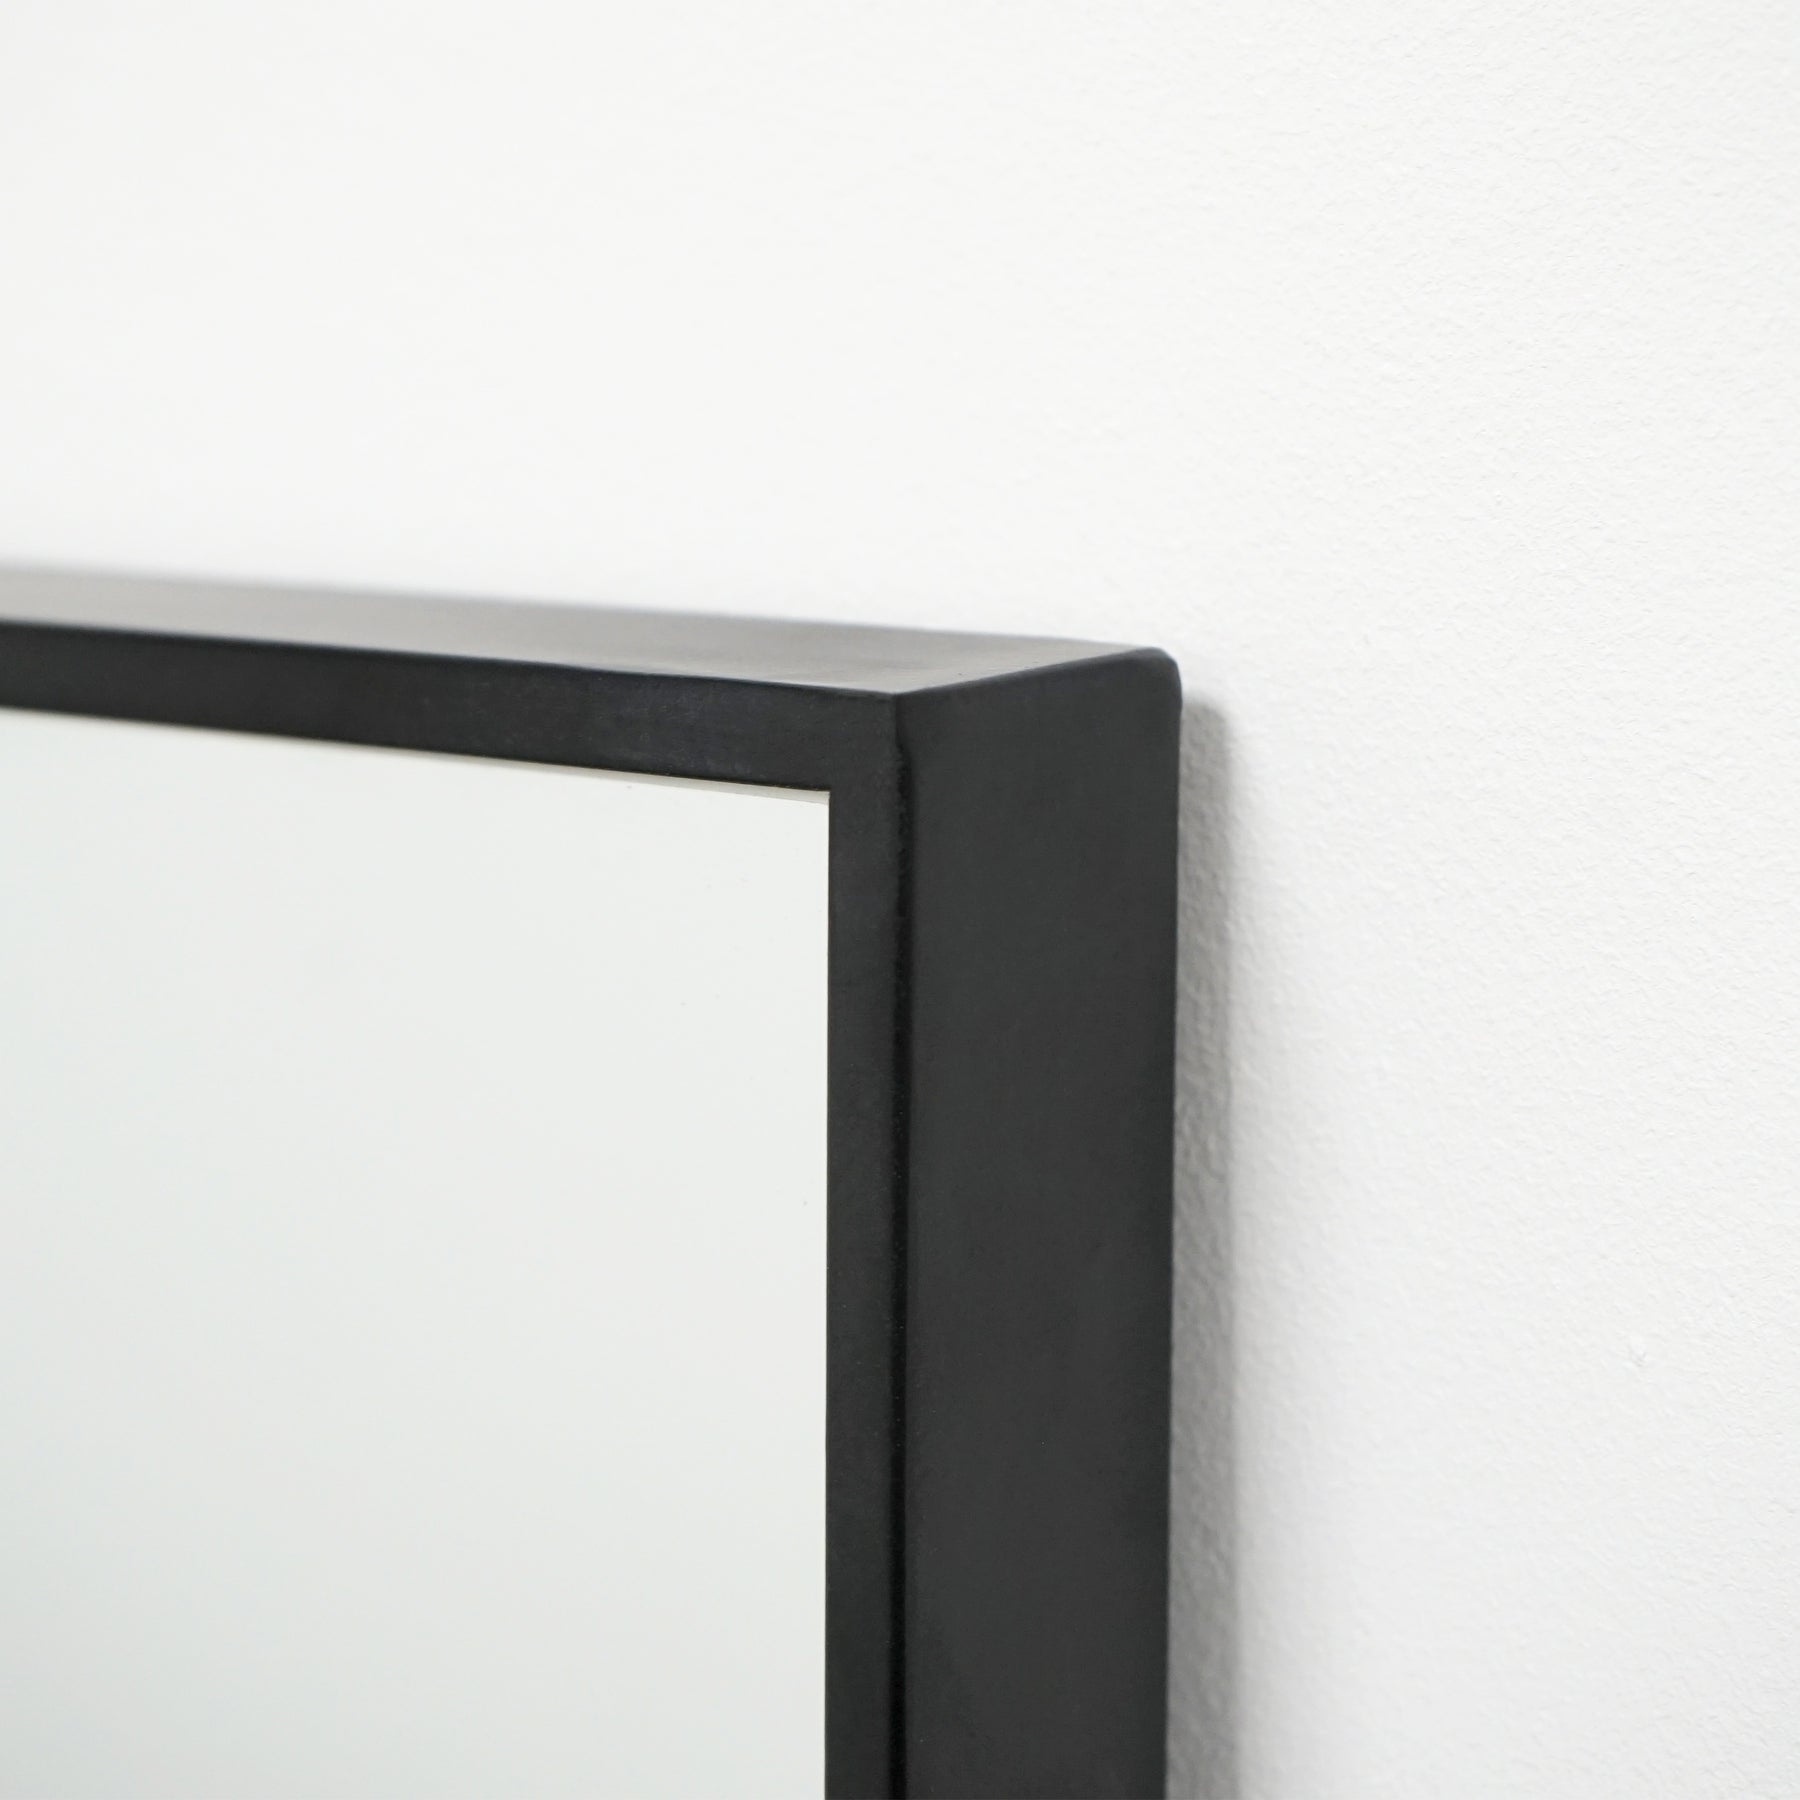 Detail shot of Full Length Black Extra Large Metal Mirror corner